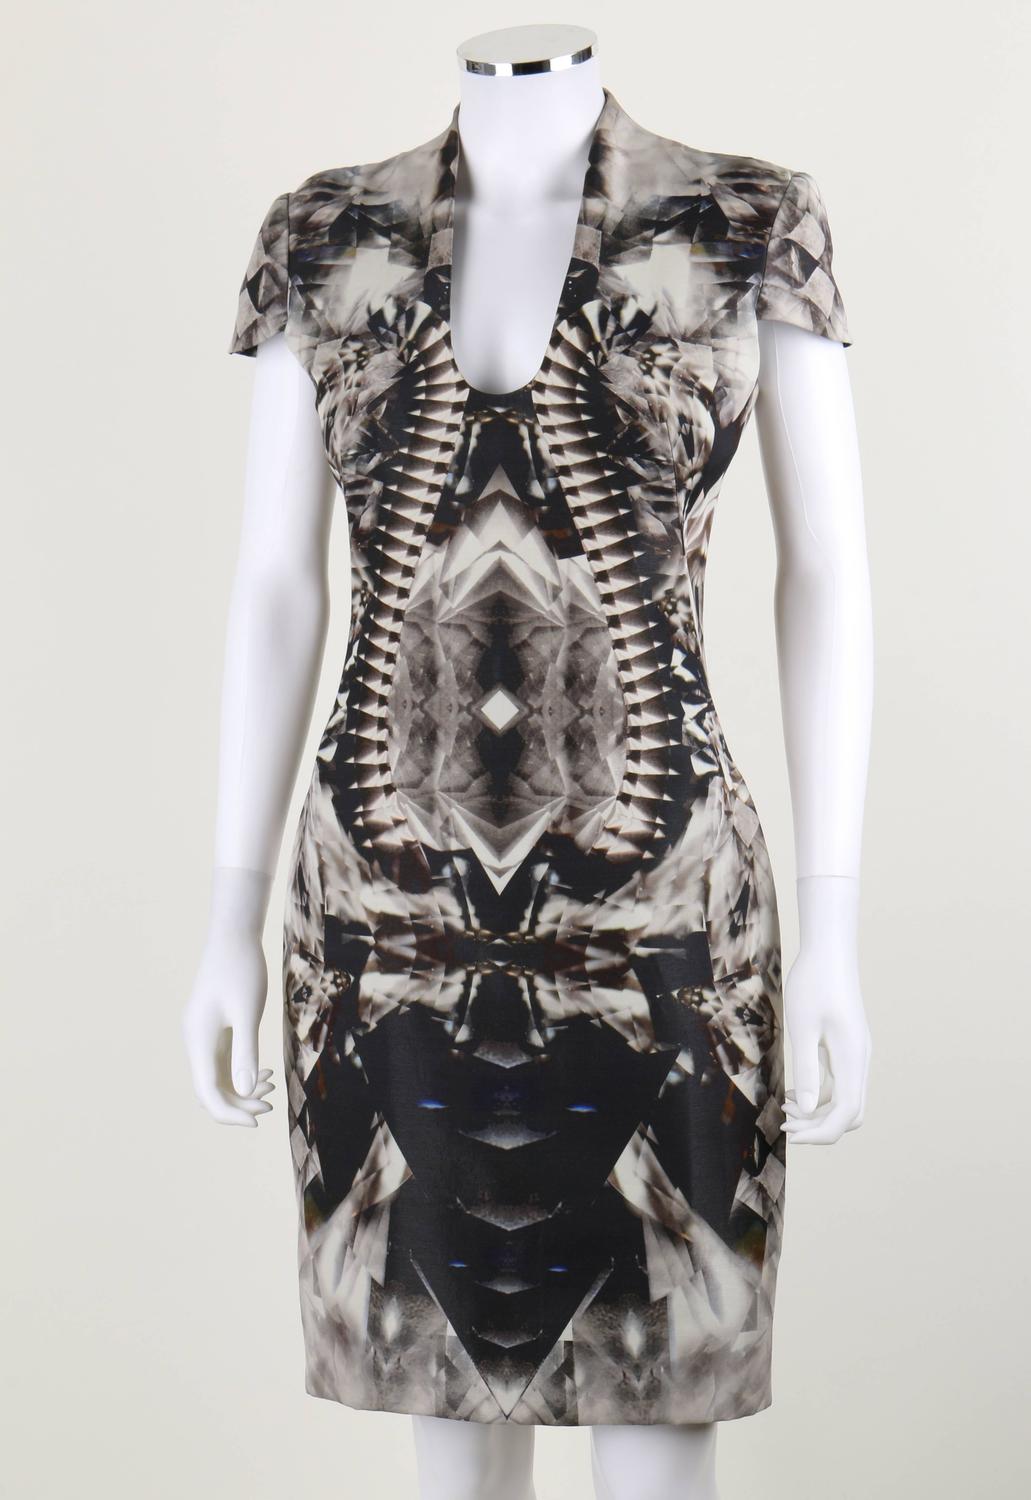 ALEXANDER McQUEEN S/S 2009 Iconic Skeleton Kaleidoscope Print Dress ...